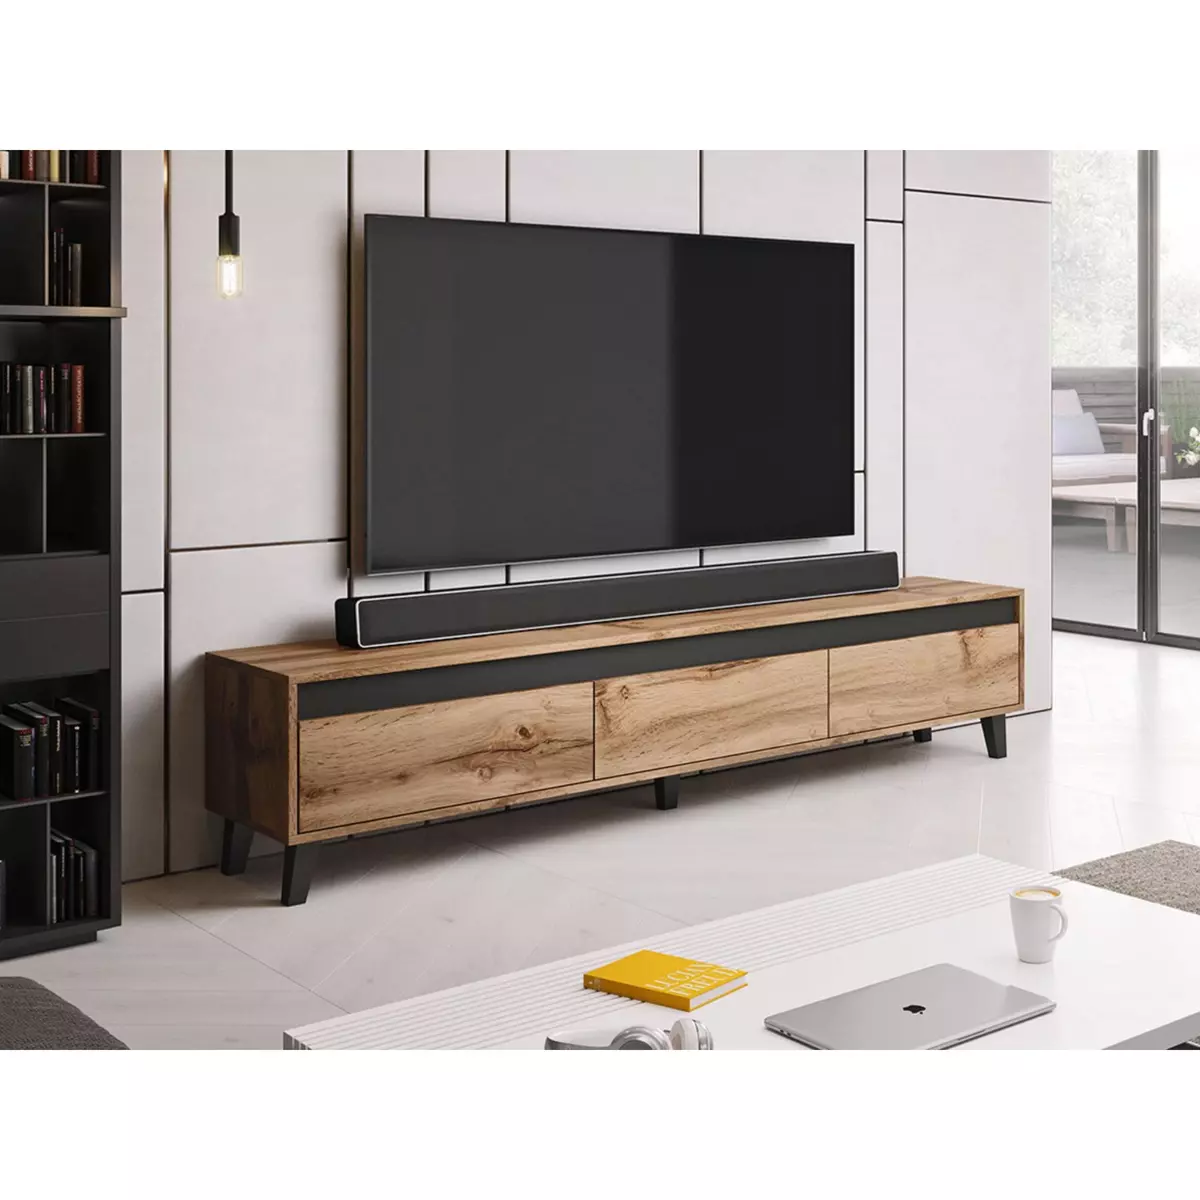 BEST MOBILIER Lord - meuble tv - bois et noir - 185 cm - style industriel -